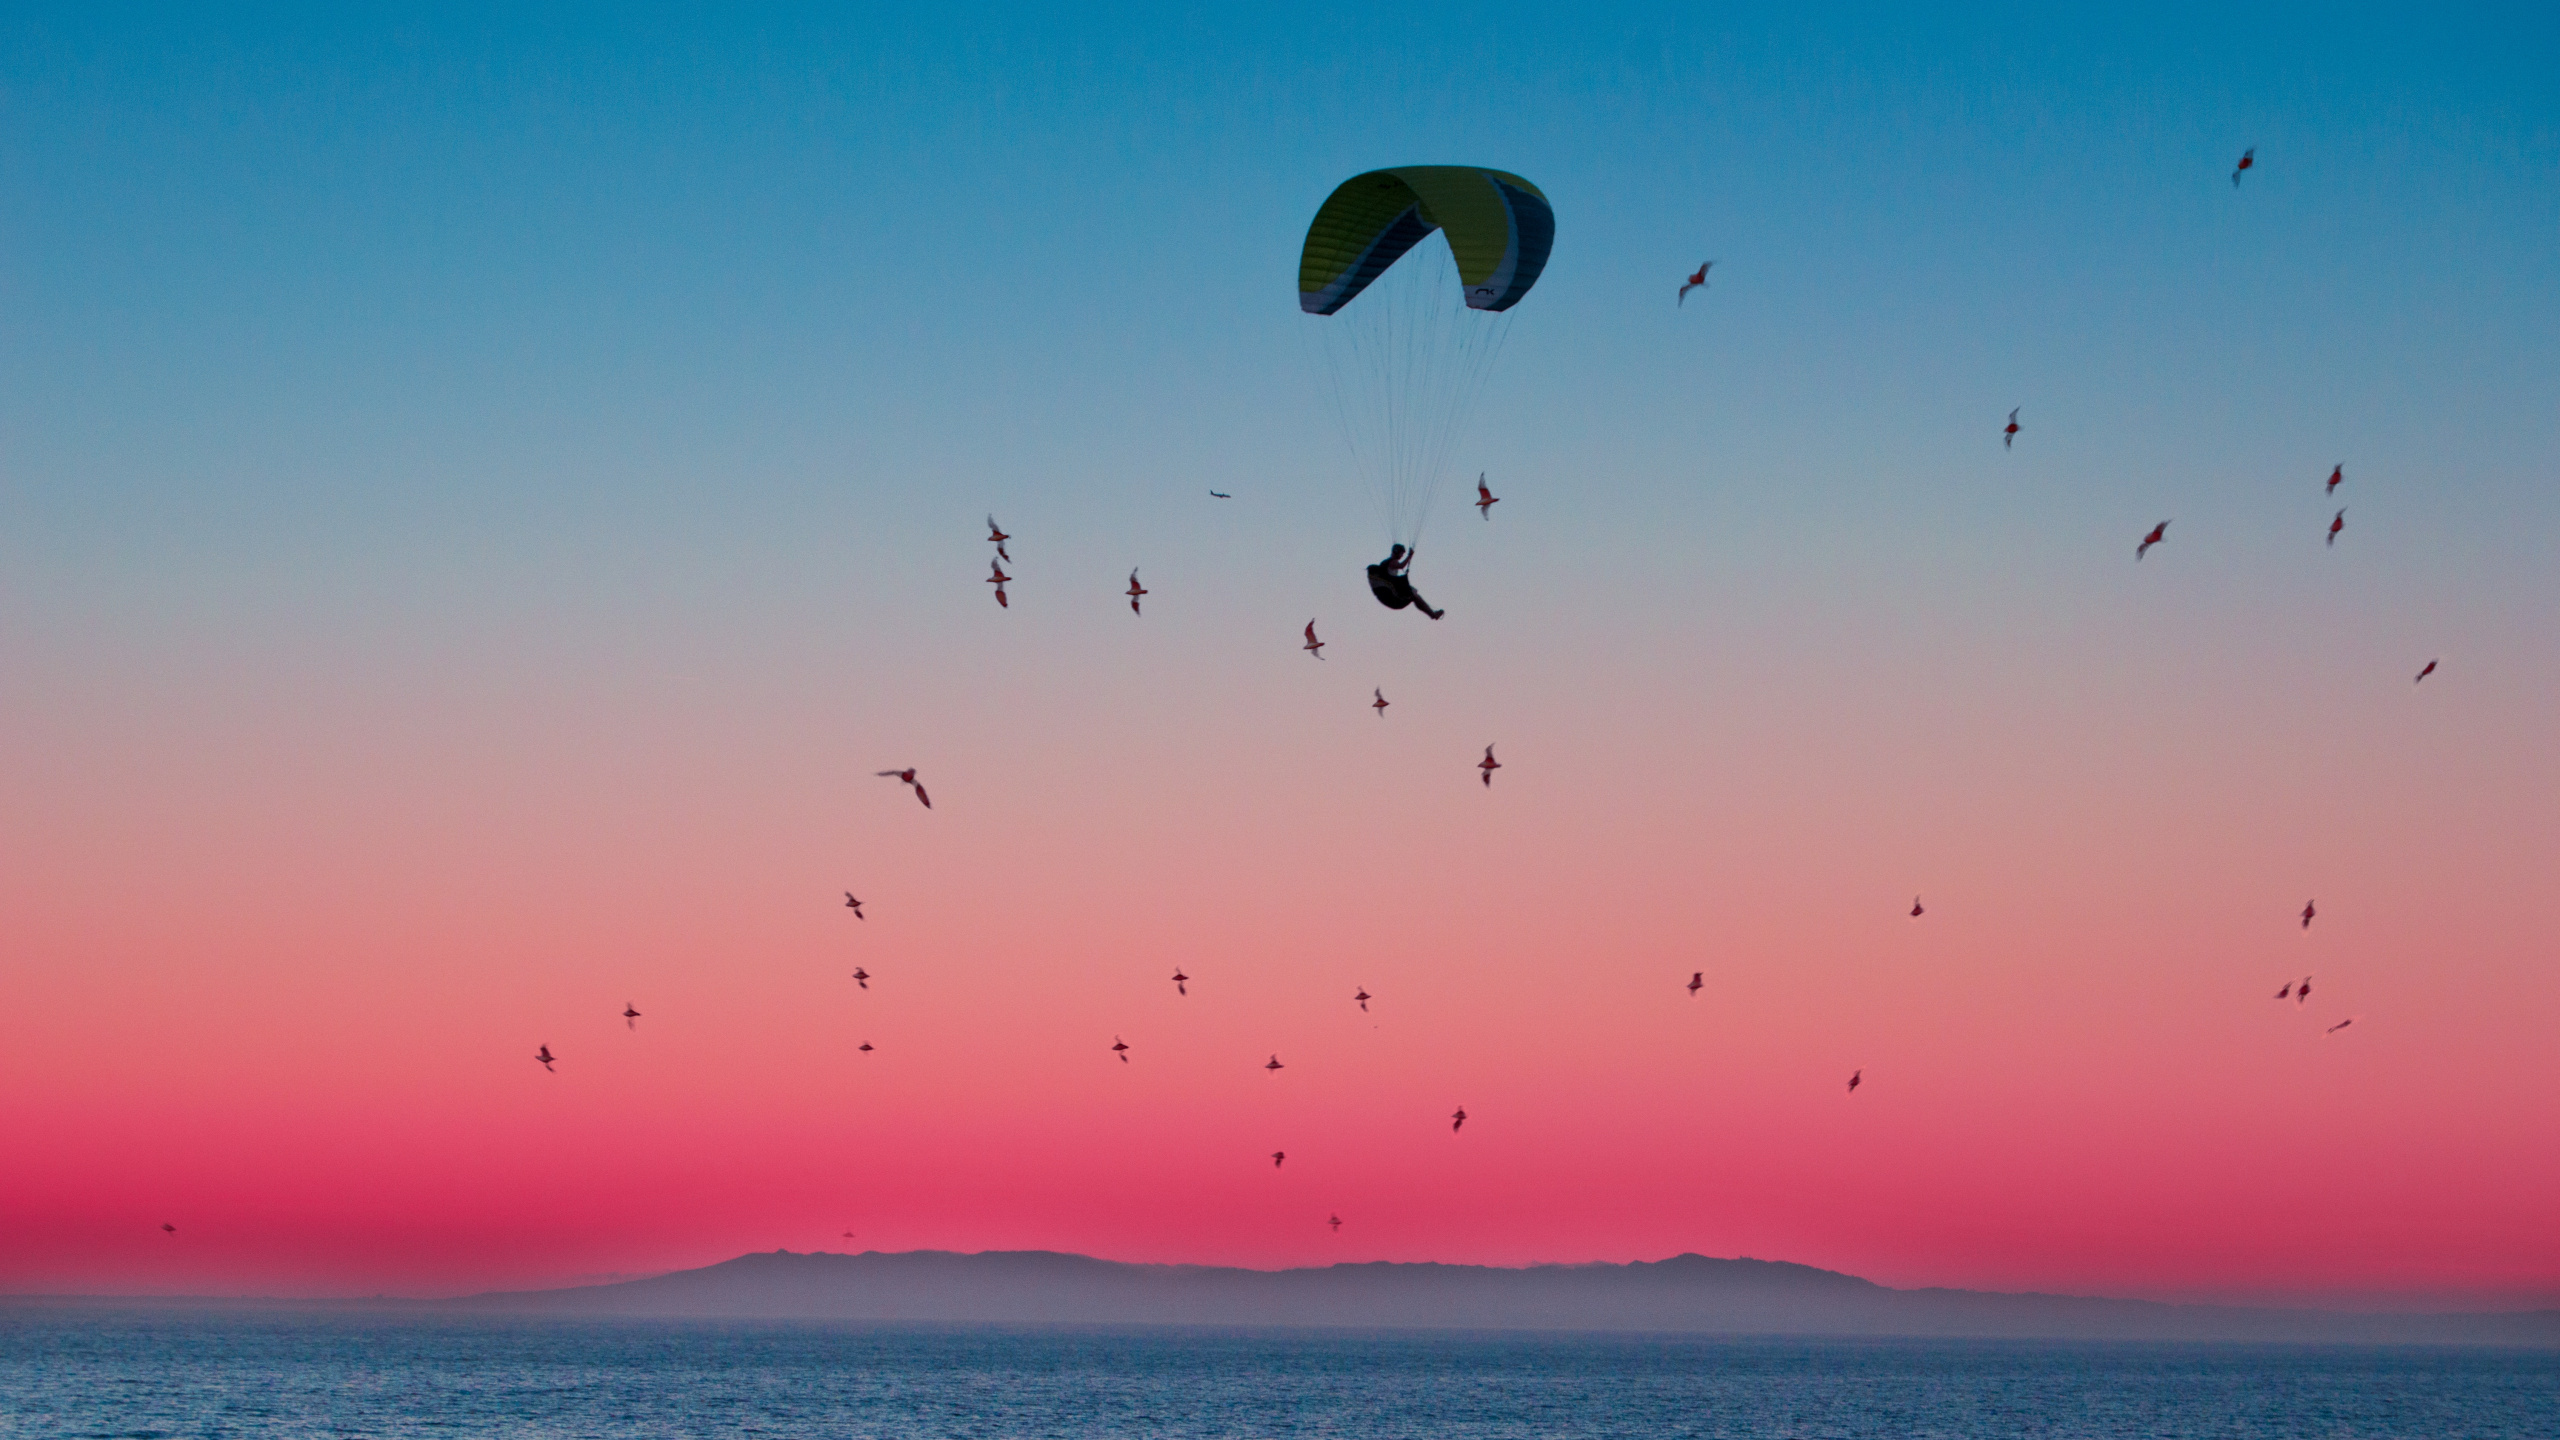 Pájaros Volando Sobre el Mar Durante la Puesta de Sol. Wallpaper in 2560x1440 Resolution